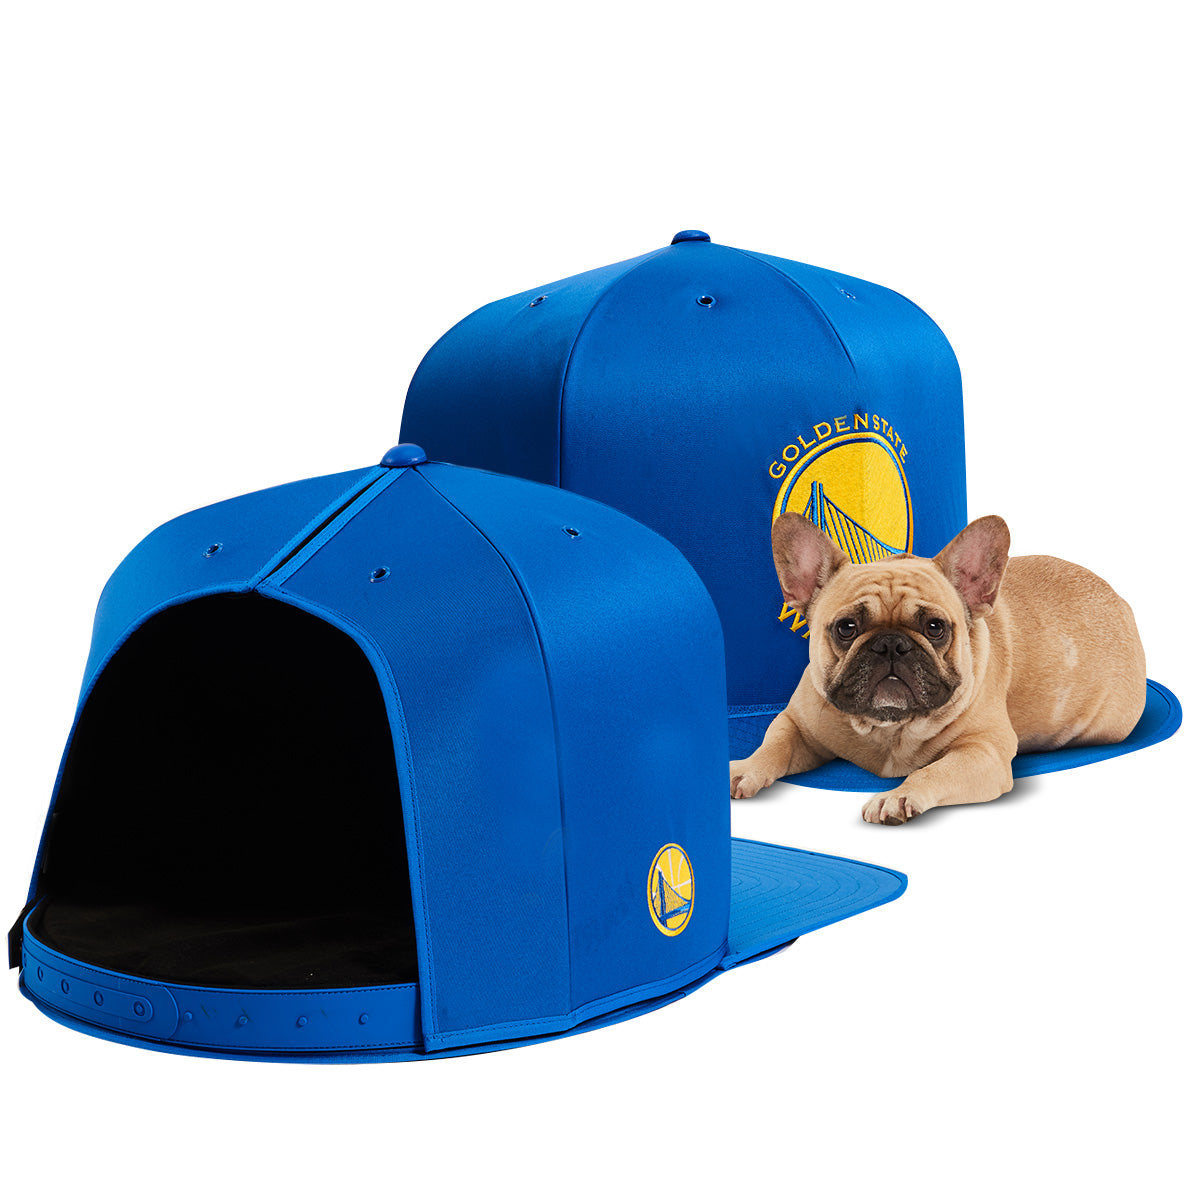 ST. LOUIS BLUES NAP CAP PLUSH DOG BED - Nap Cap